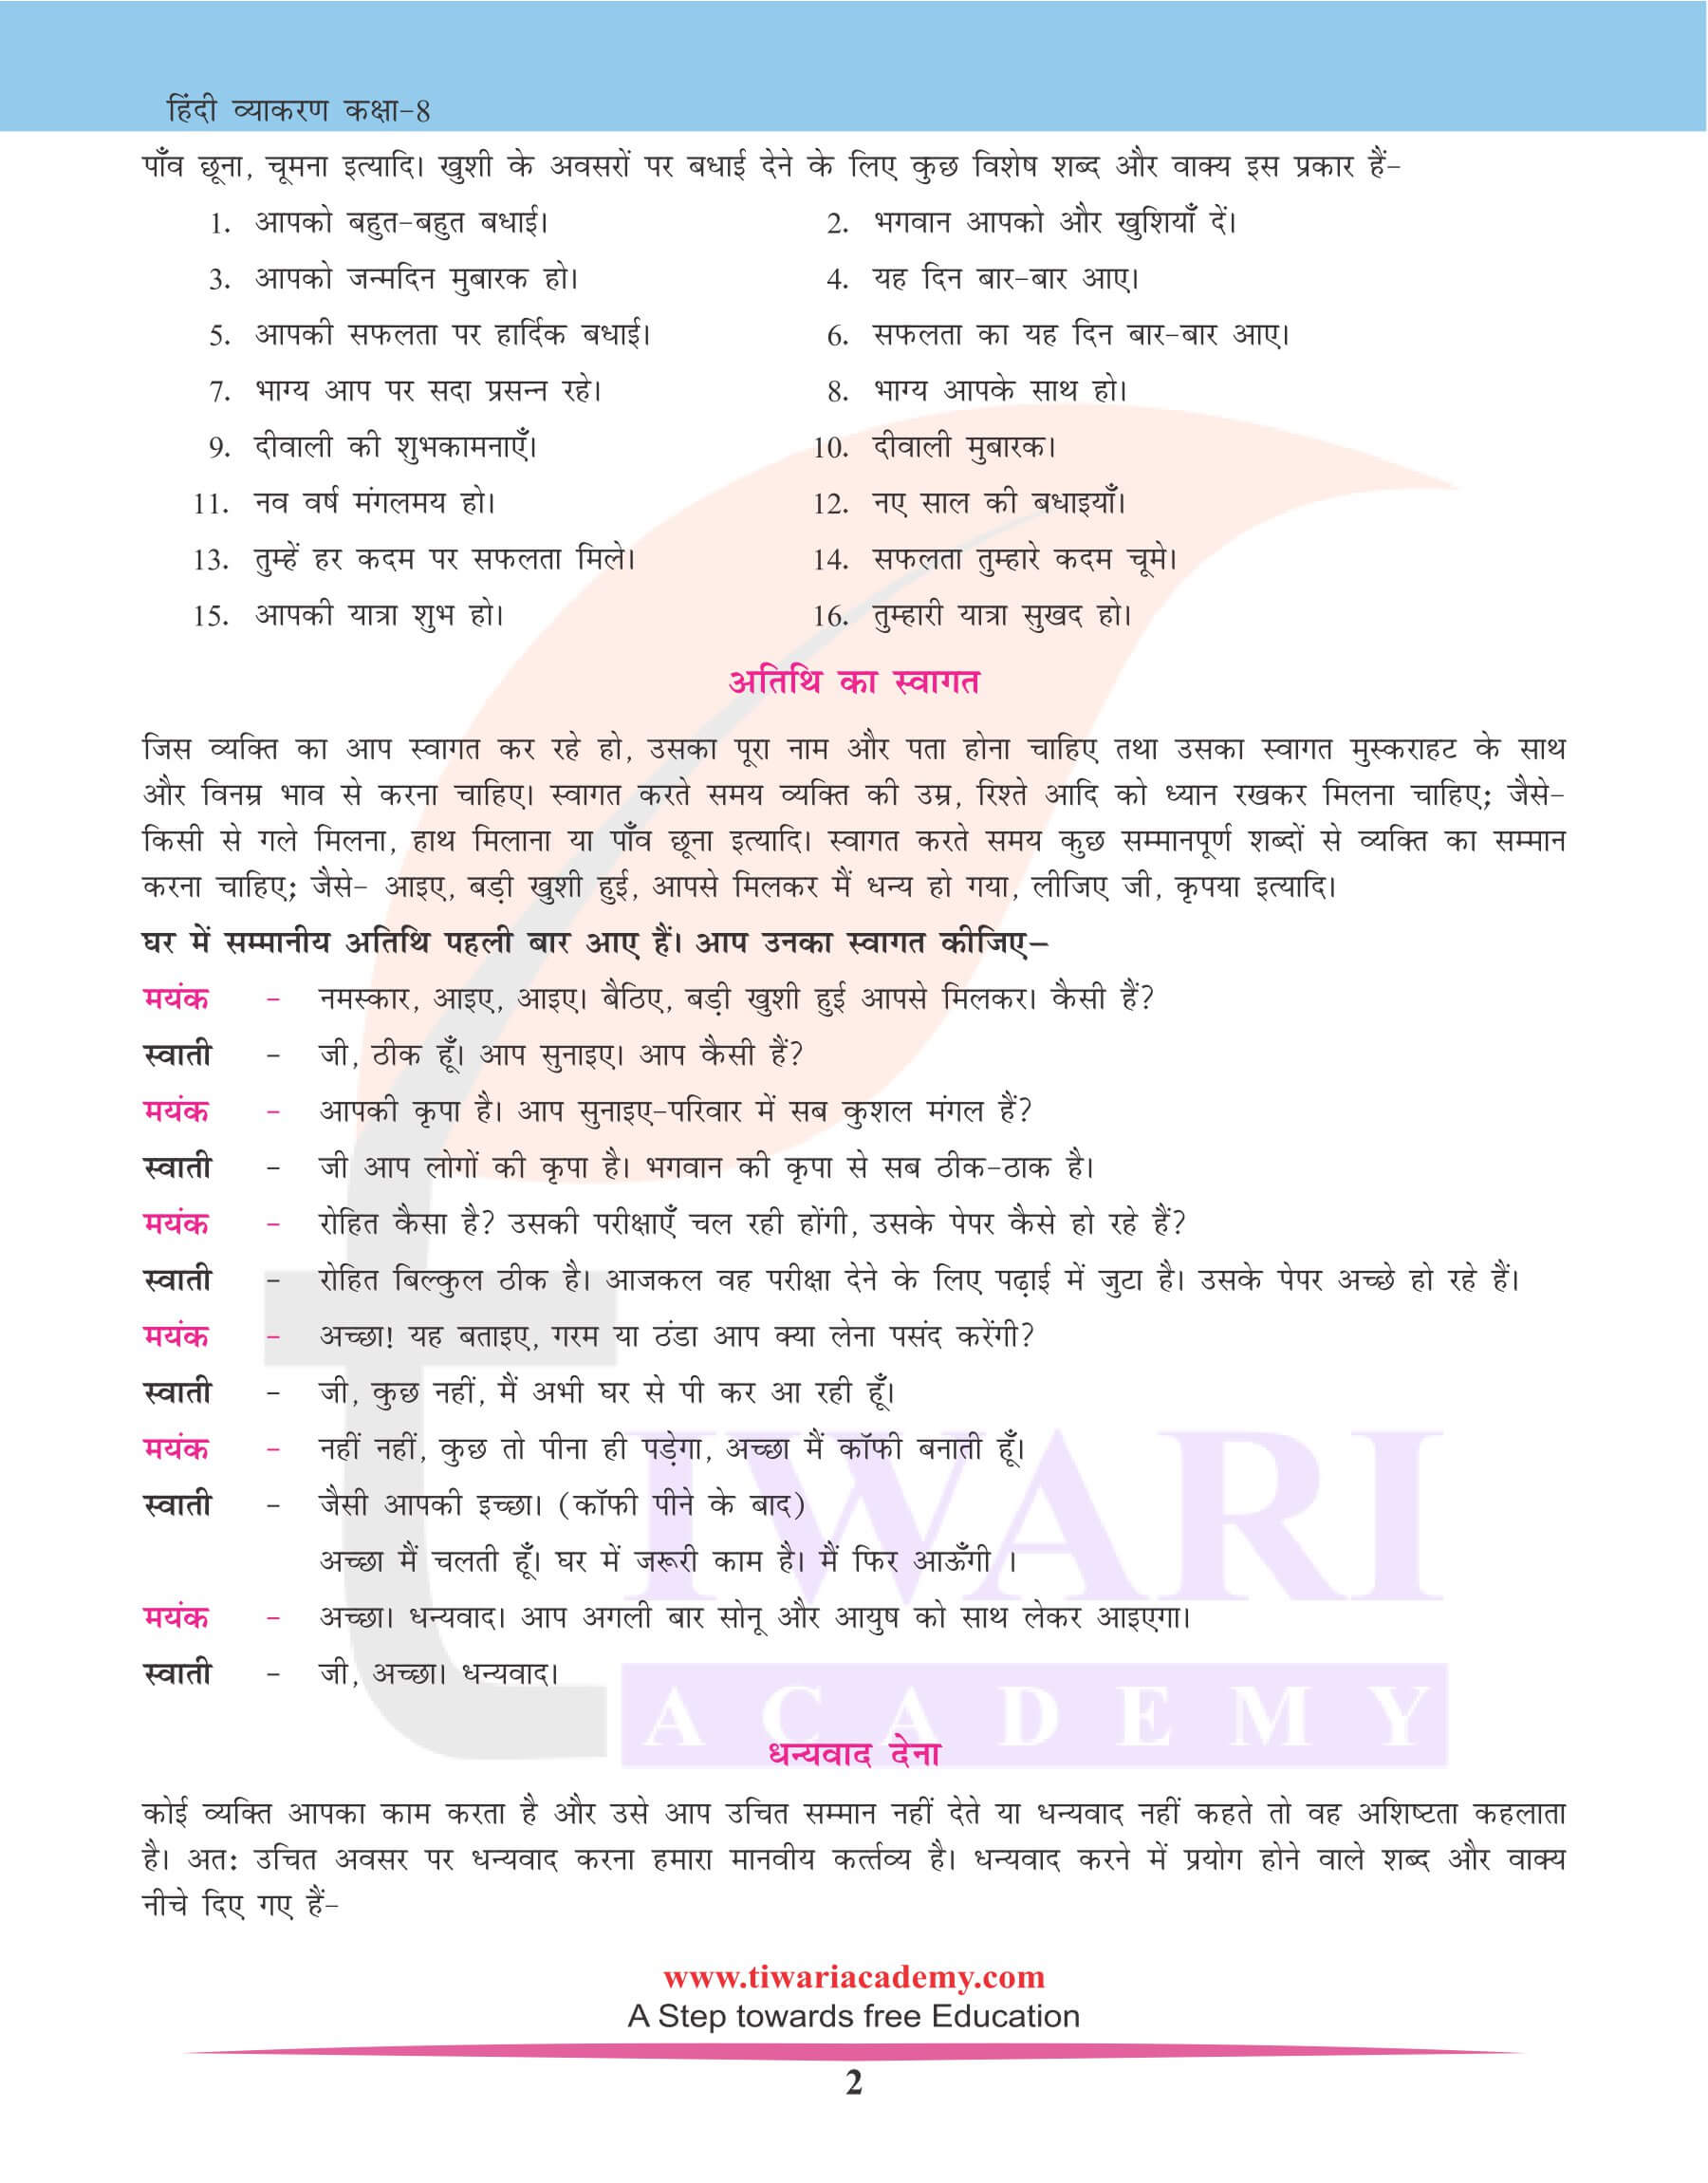 कक्षा 8 हिंदी व्याकरण में मौखिक अभिव्यक्ति